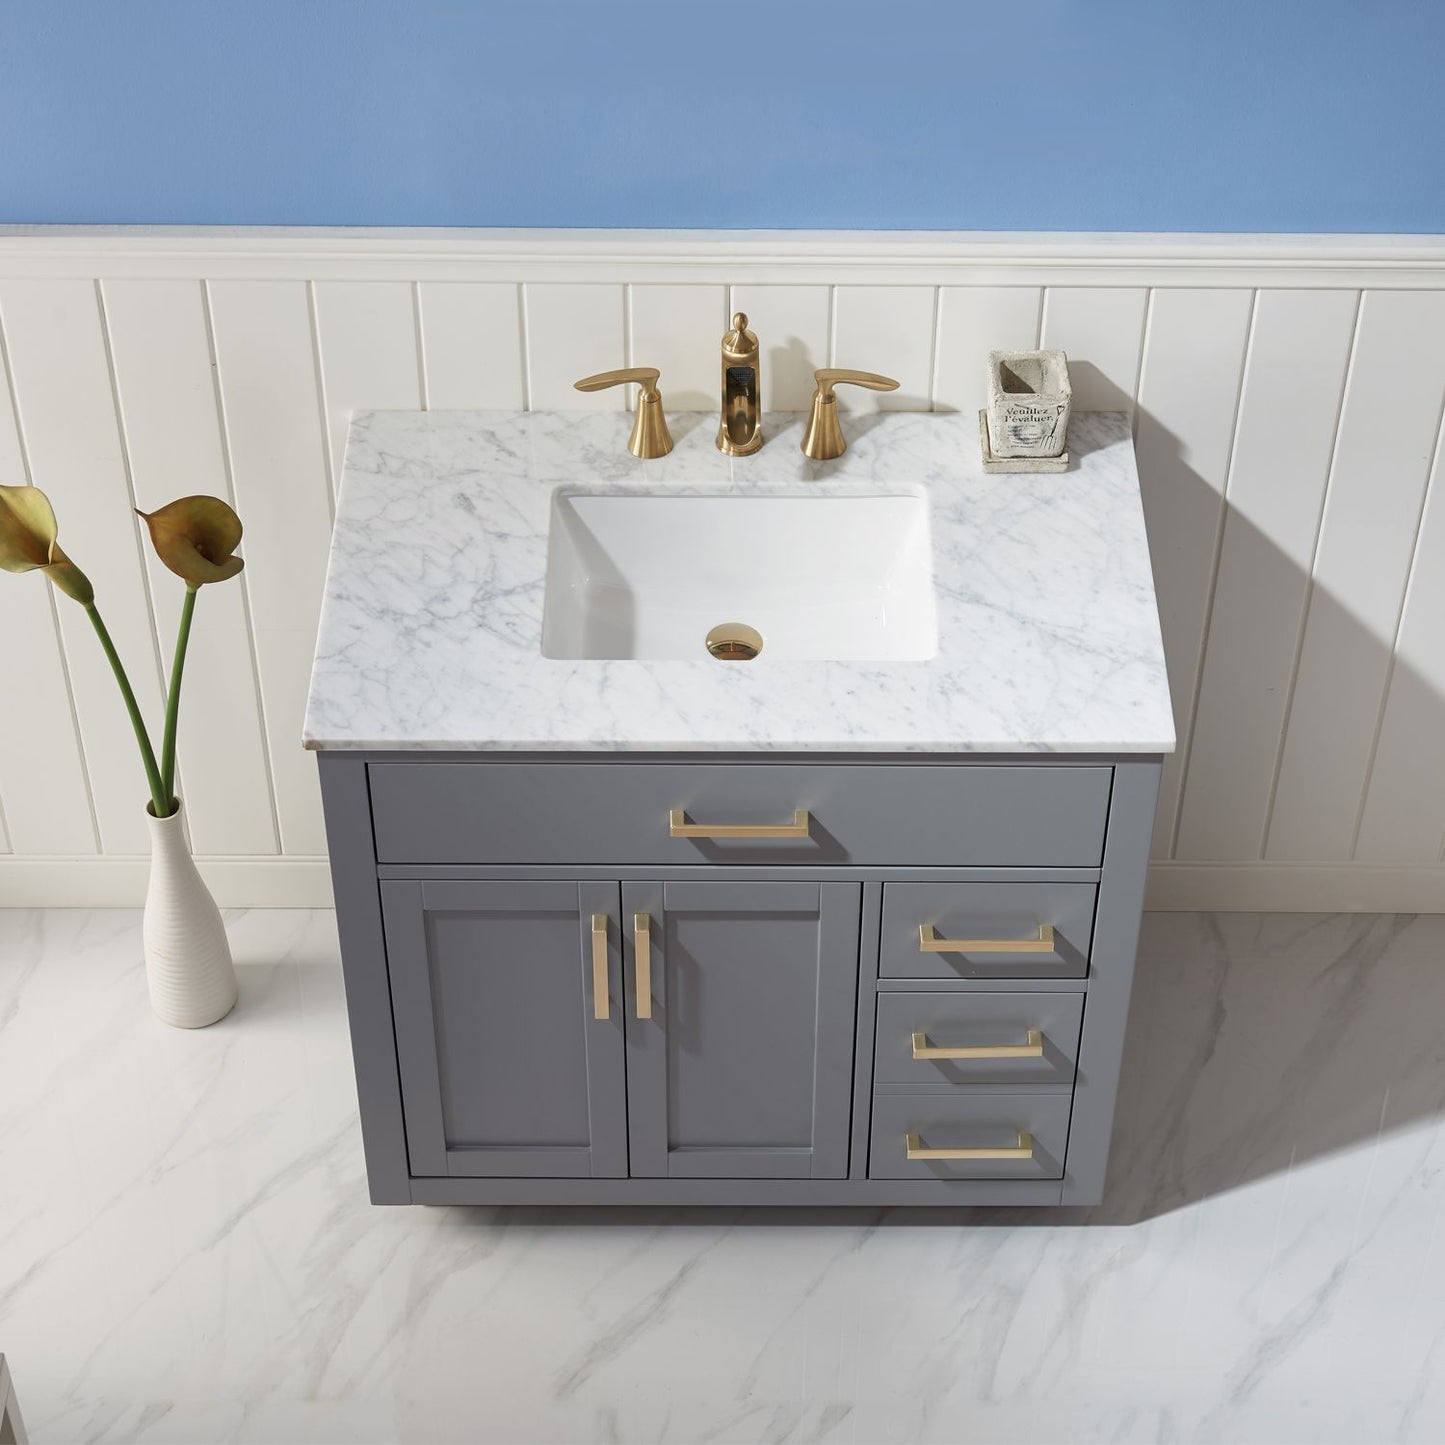 Altair Ivy 36" Single Bathroom Vanity Set Countertop without Mirror - Luxe Bathroom Vanities